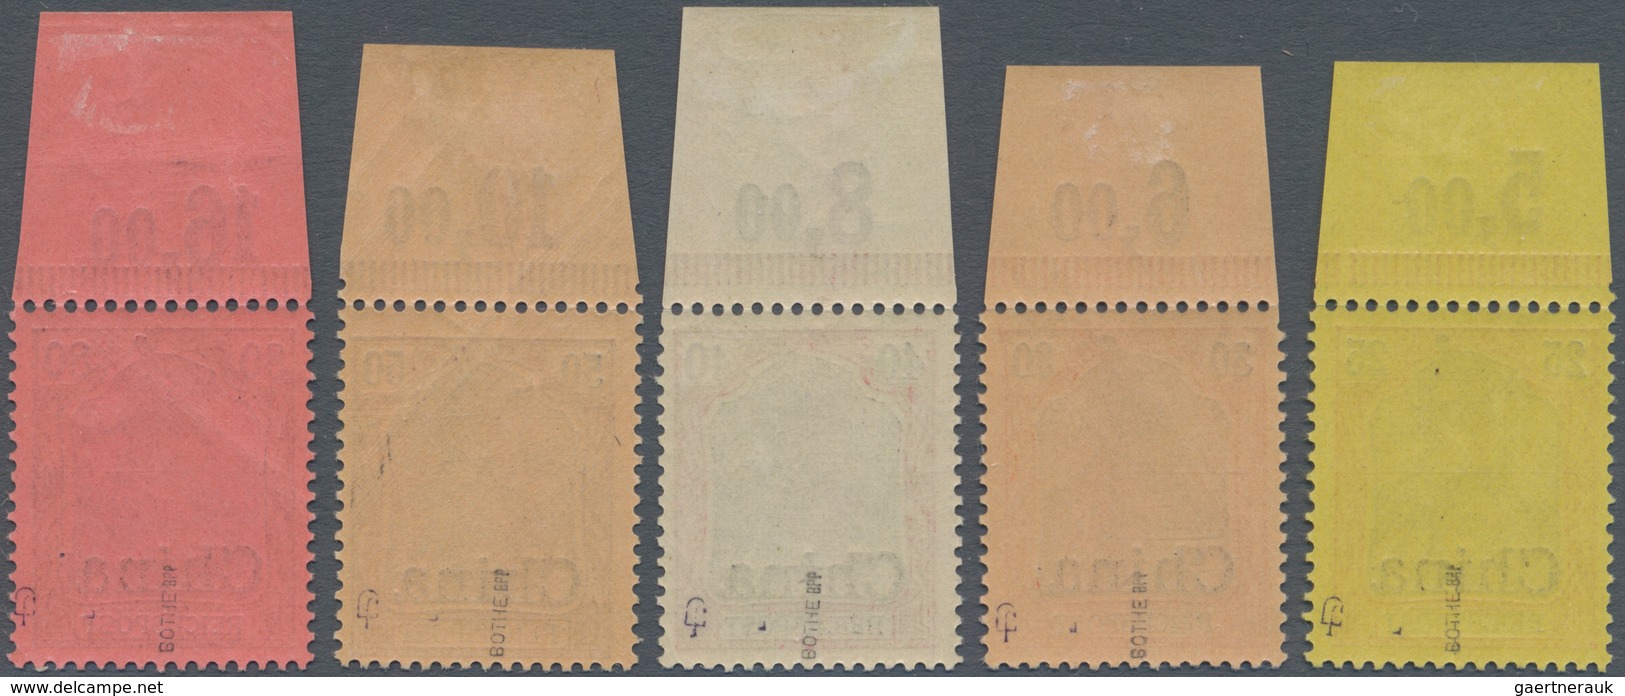 Deutsche Post In China: 1901. 3 Pfg Braun Bis 5 Mk Grünschwarz/bräunlichkarmin. Die Amtlich Nicht Au - Deutsche Post In China